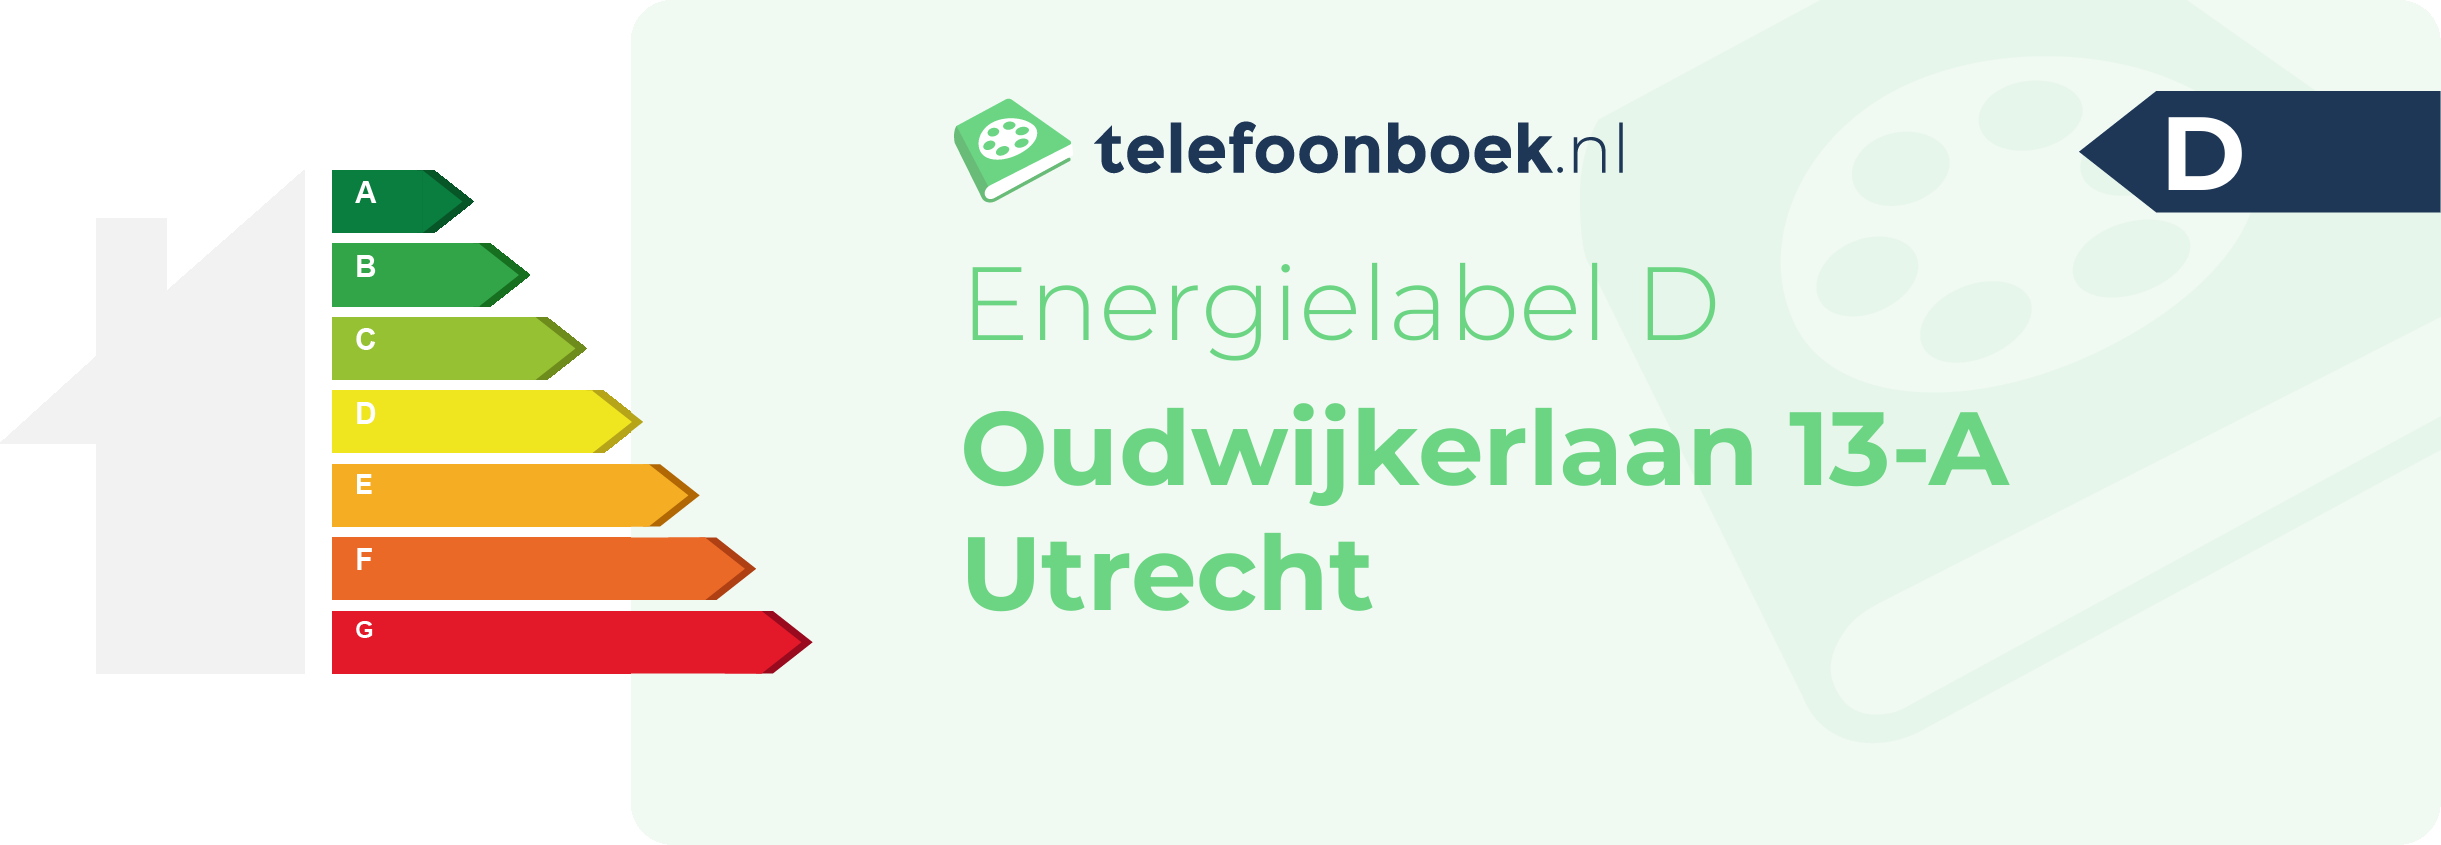 Energielabel Oudwijkerlaan 13-A Utrecht